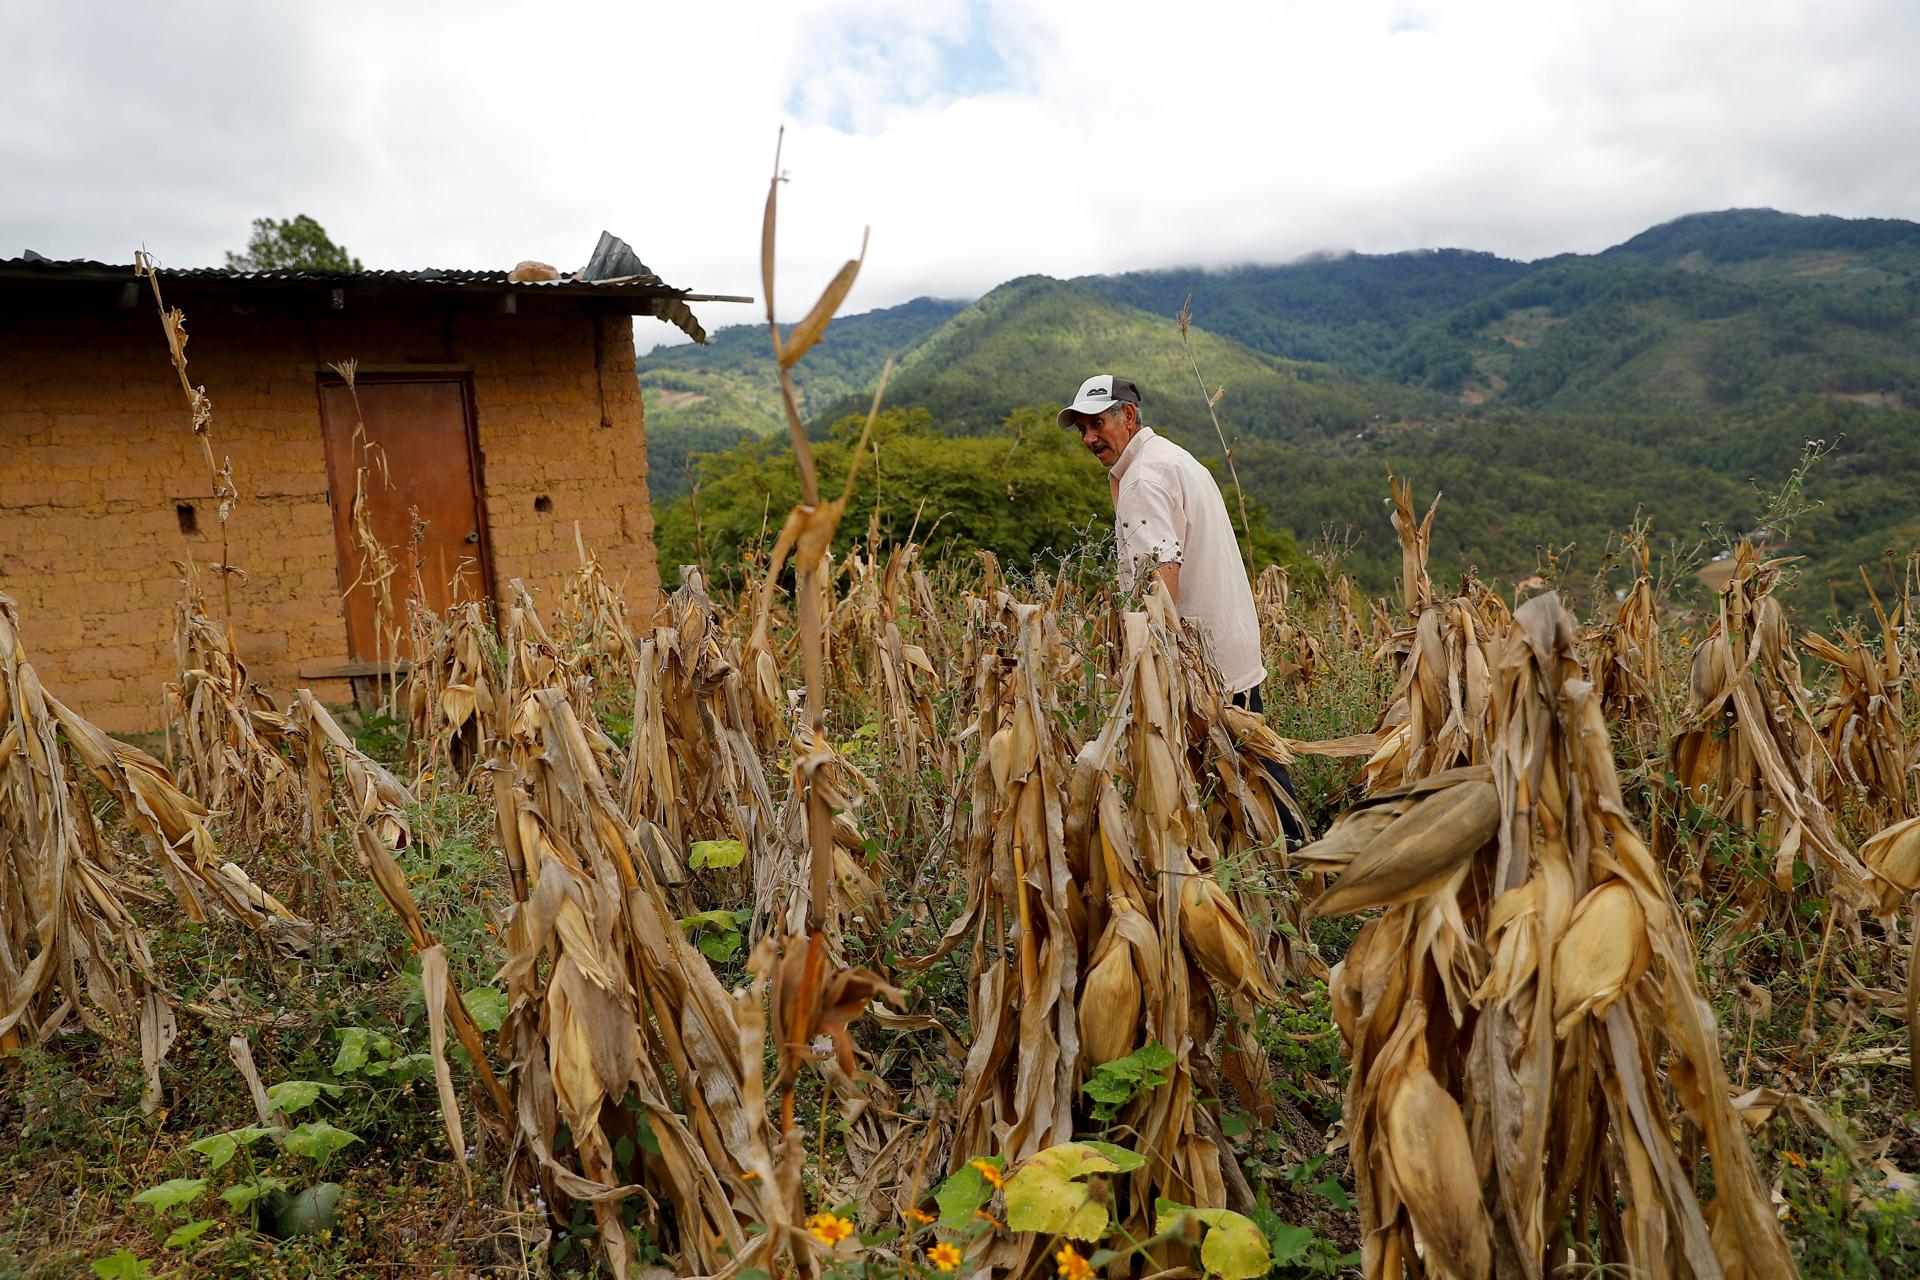 Restitución de tierra en Colombia: ¿Cómo avanza el proceso en el nuevo Gobierno?